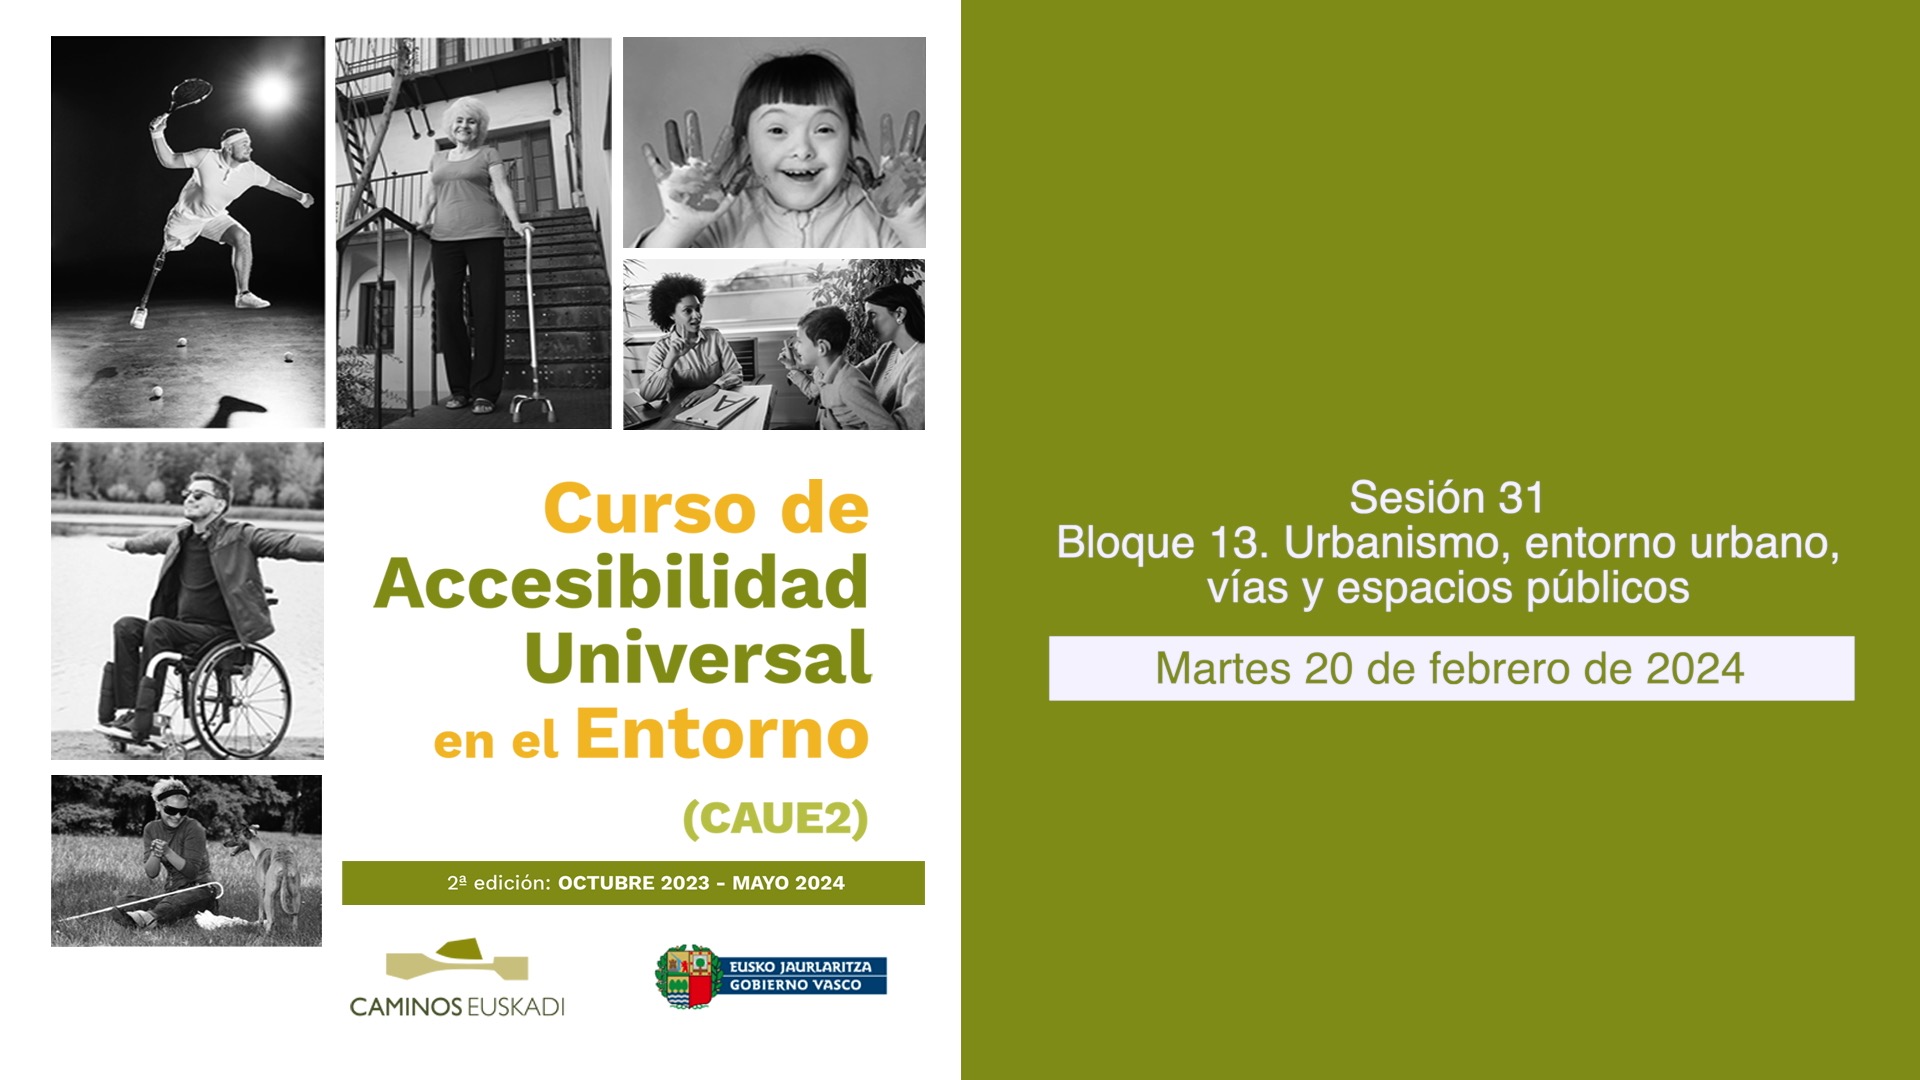 Sesión 31 - Bloque 13. Urbanismo, entorno urbano, vías y espacios públicos.